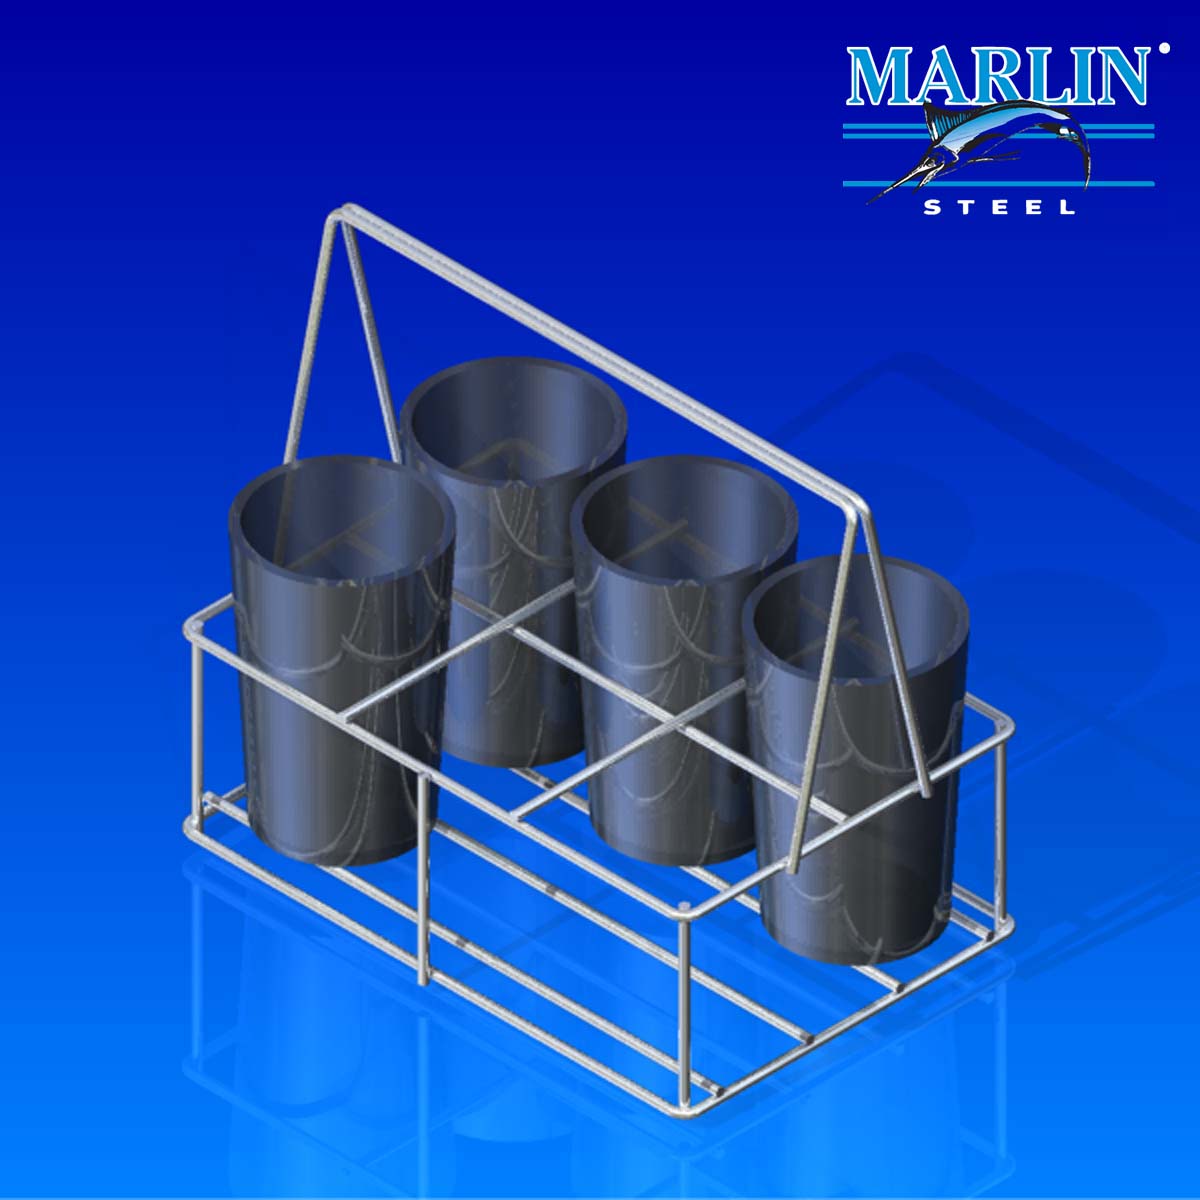 Marlin Steel Wire Material Handling Basket 13026